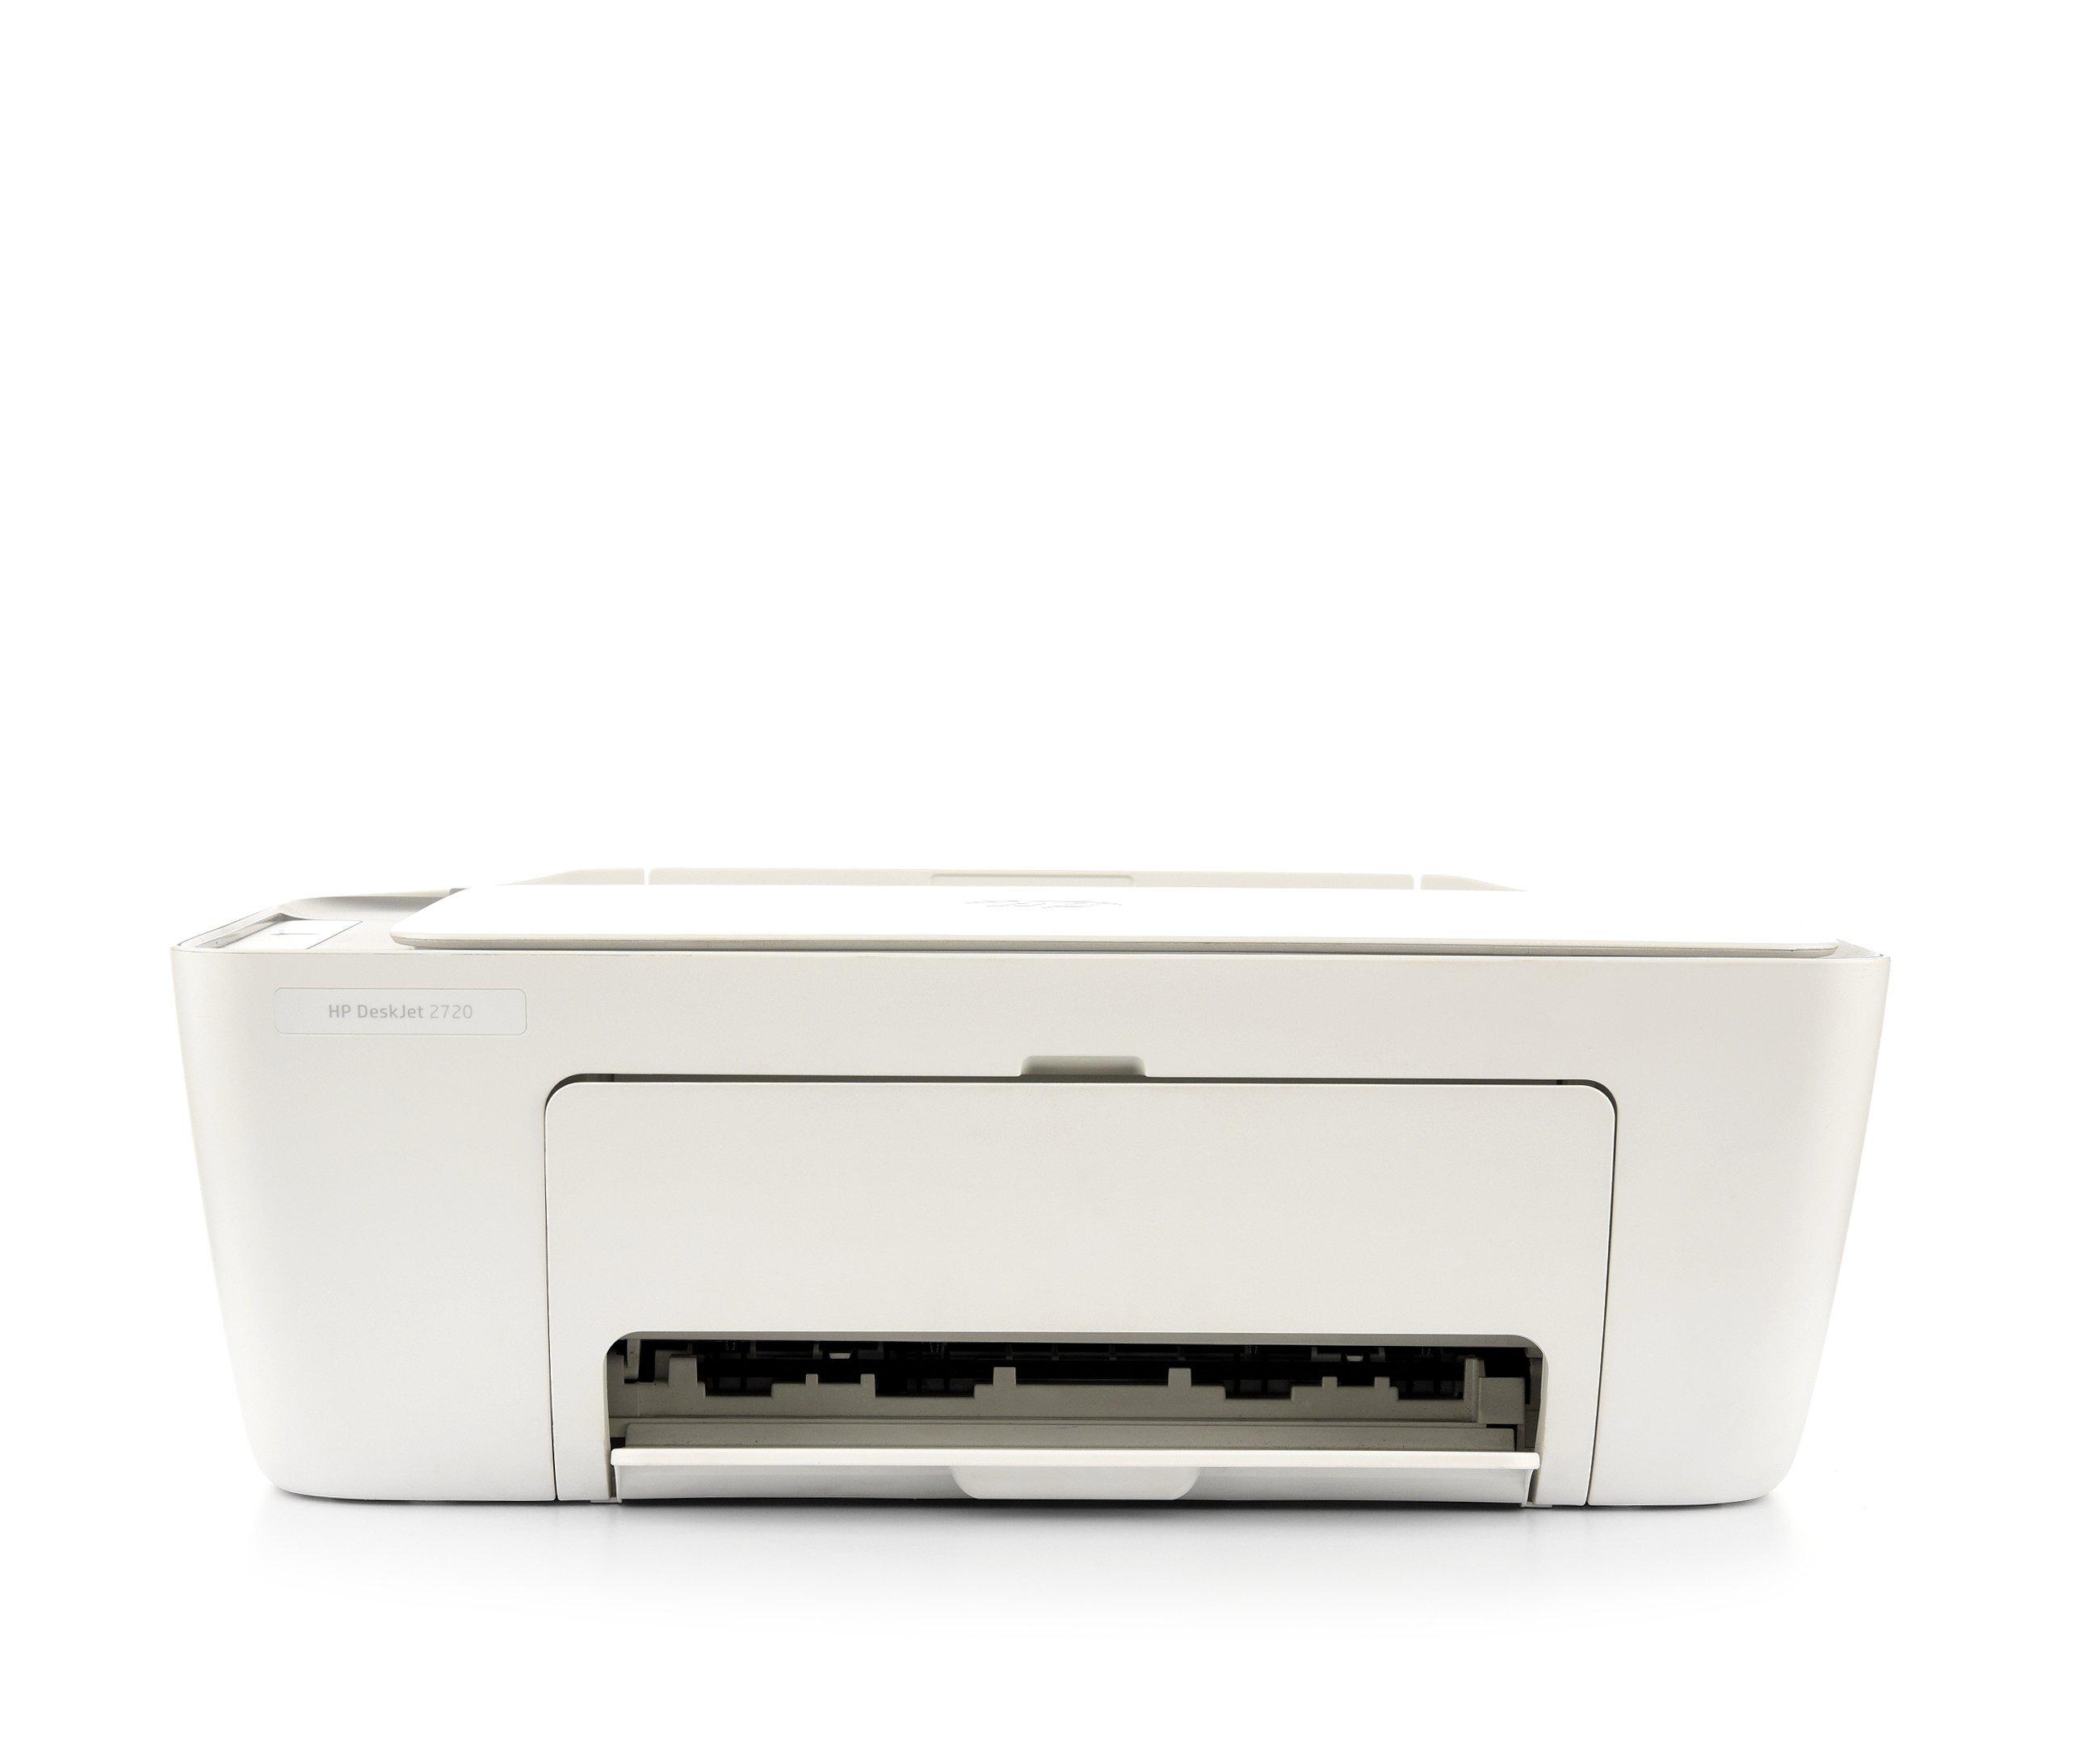 DeskJet 2720 All-in-One Printer, Print, Copy, Scan, Wireless, White - Saudi